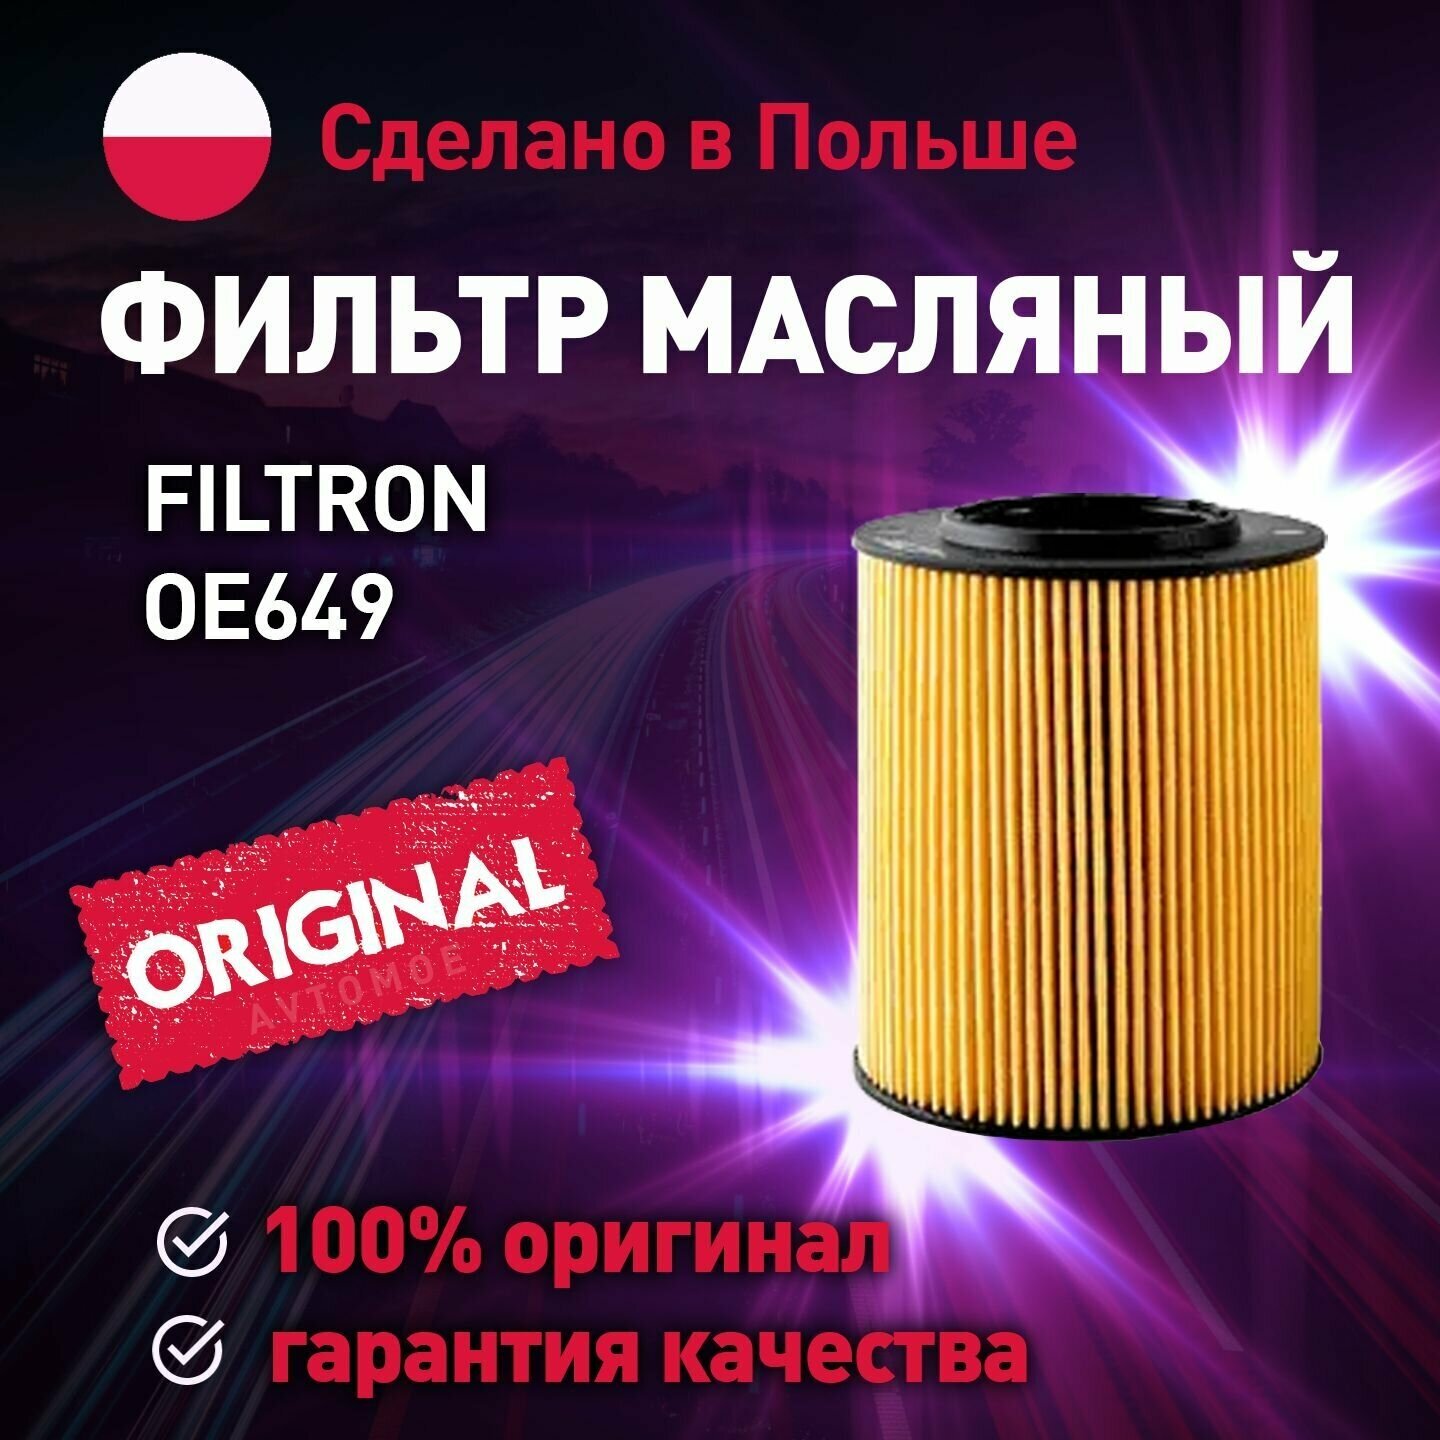 Фильтр масляный OE649 Filtron для BMW X3, X5 / Масляный фильтр Фильтрон для БМВ х3, х5